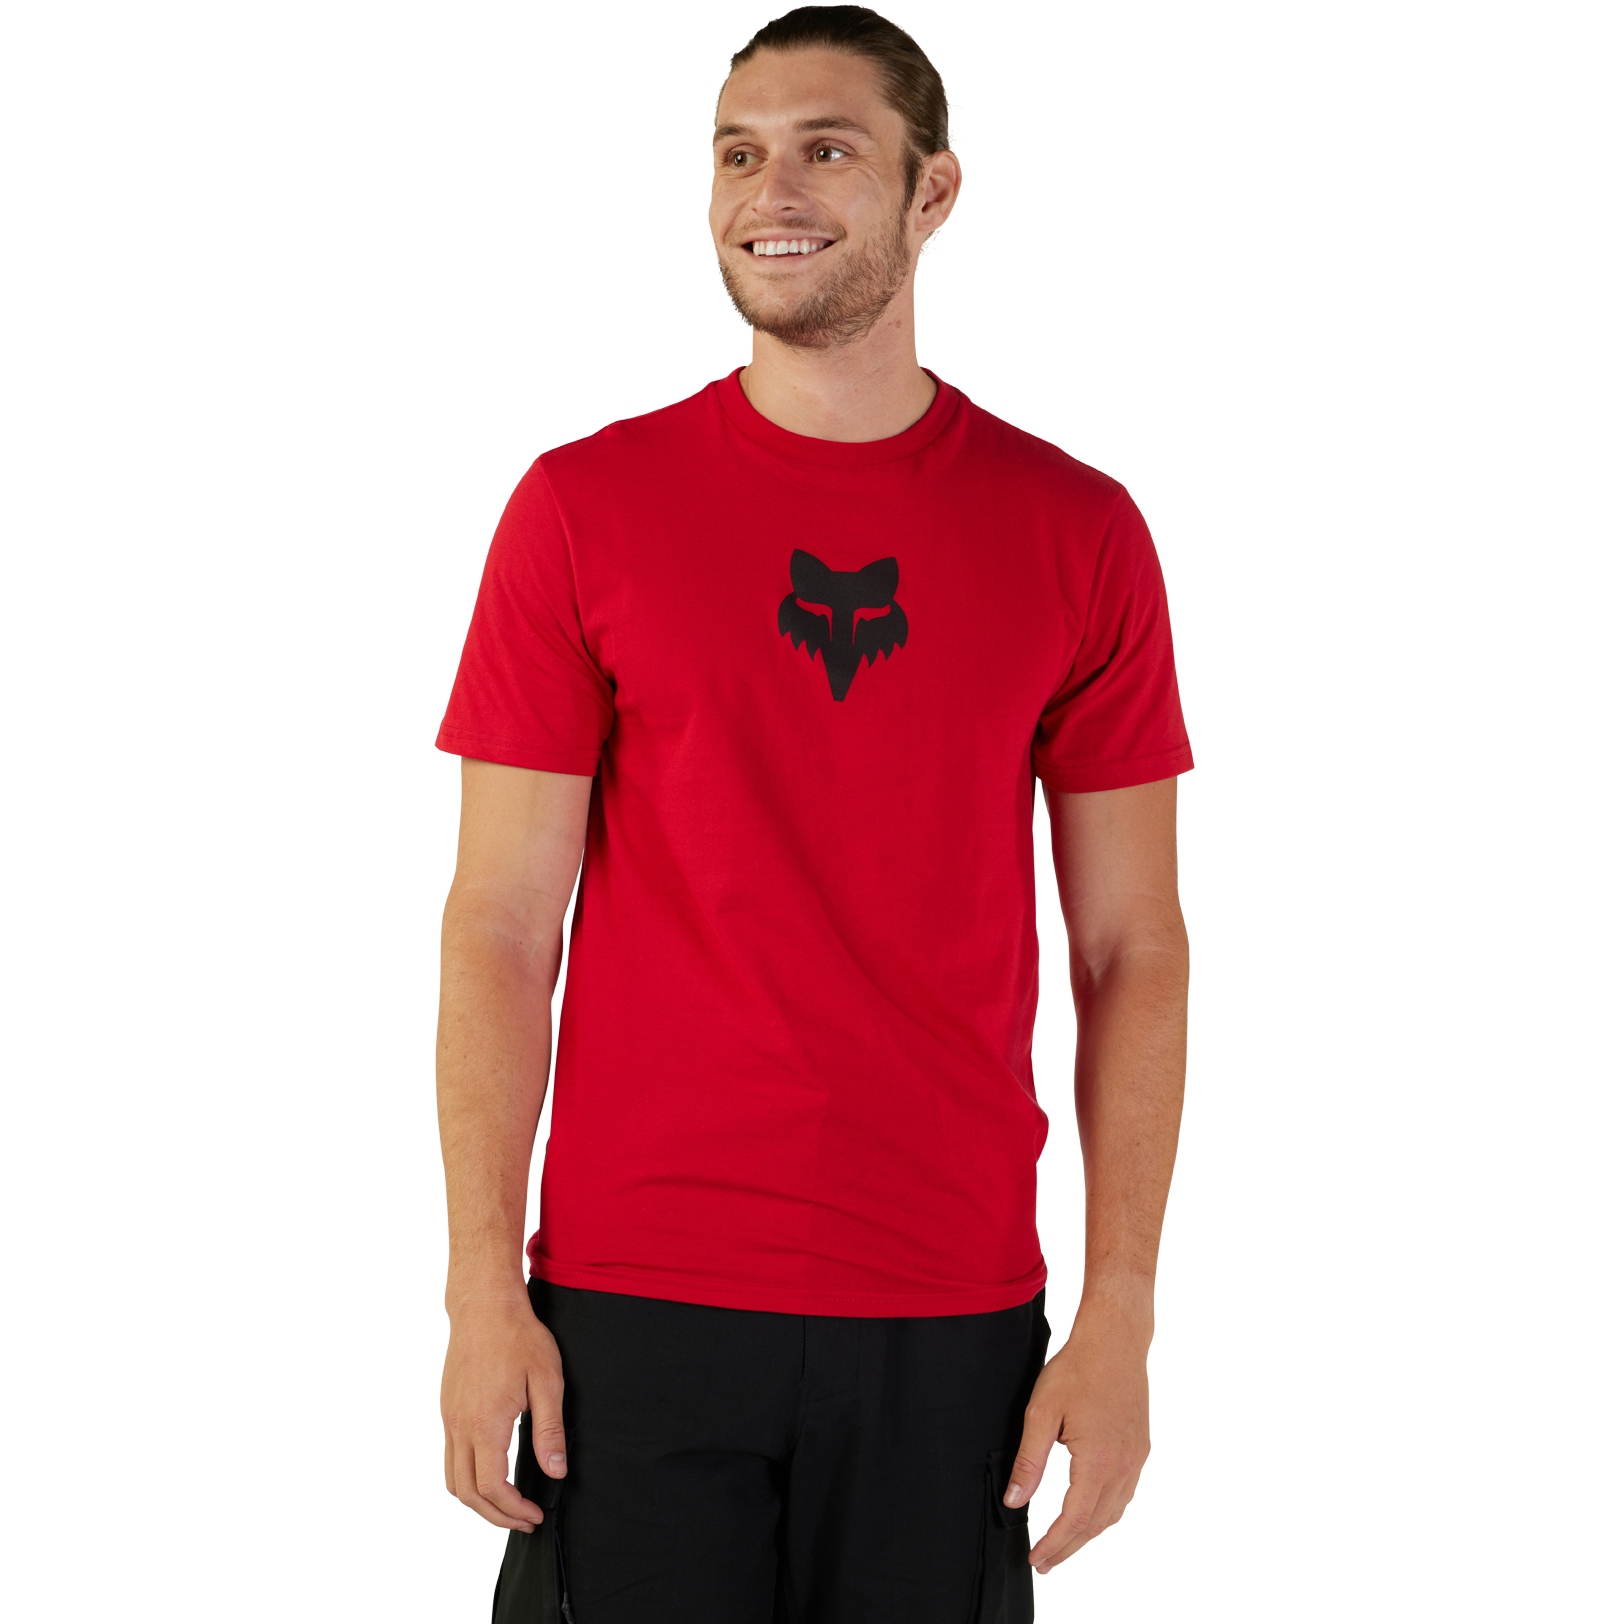 Productfoto van FOX Head Premium T-Shirt Heren - flame red